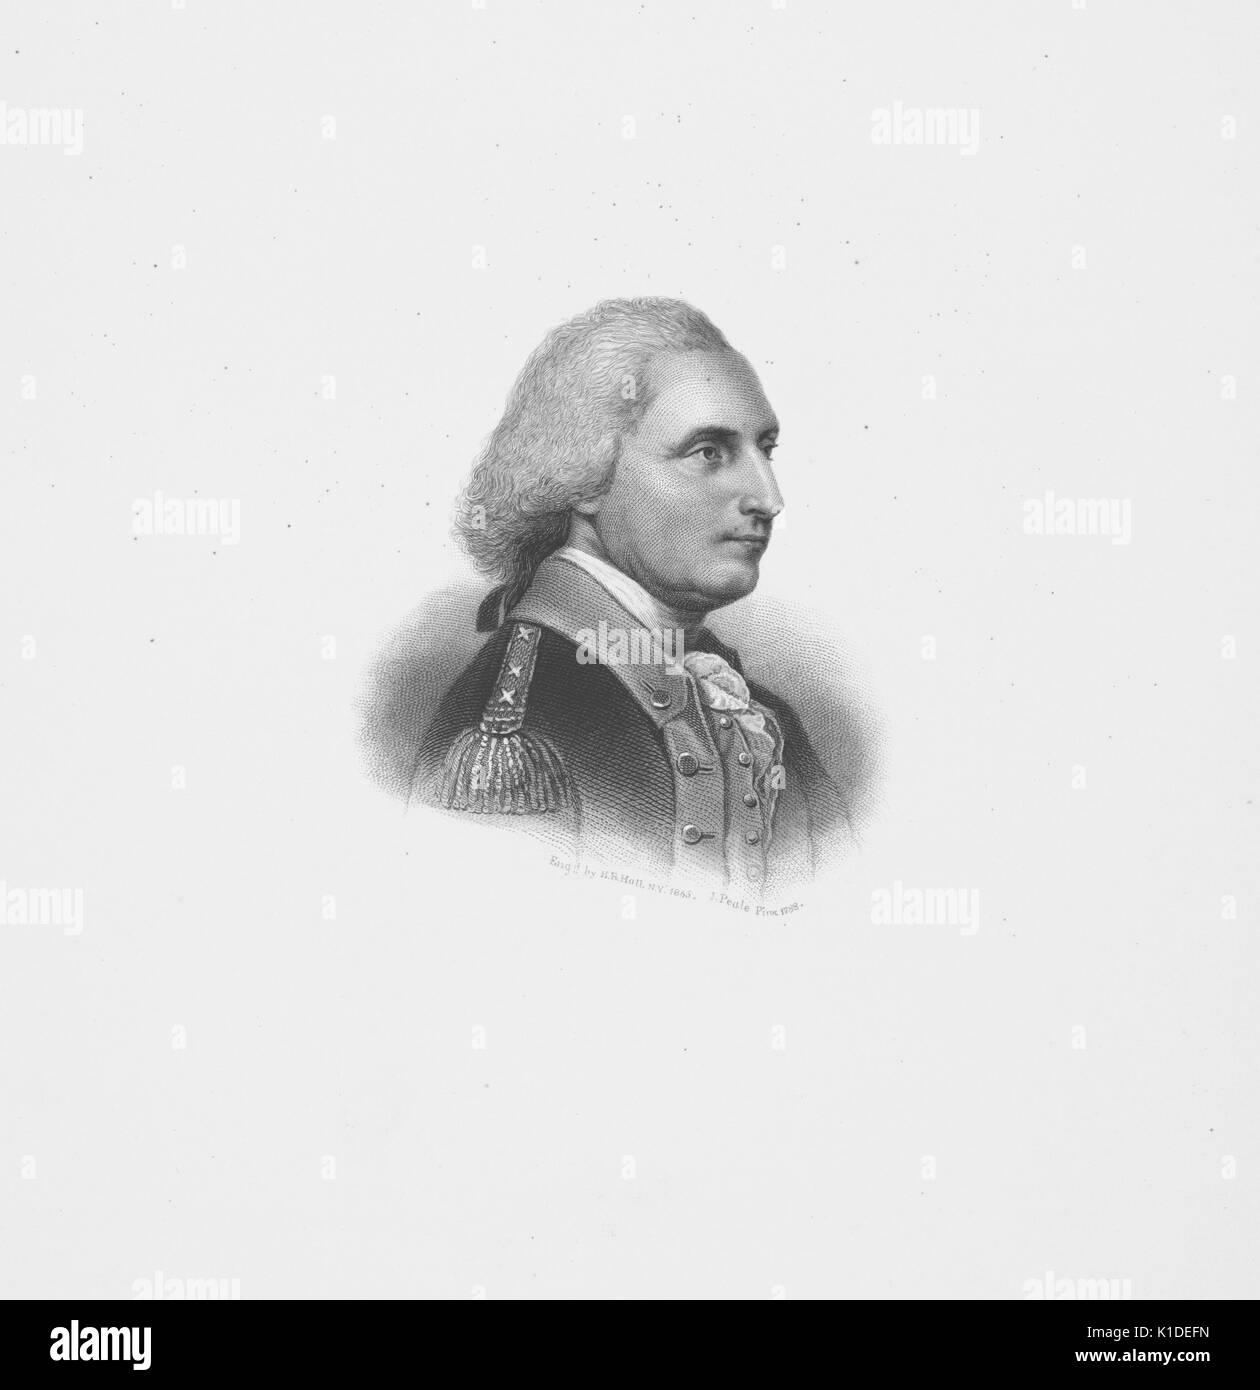 Ein kupferstich von einem Porträt von George Washington, in einem drei-viertel Profil anzeigen dargestellt, das Tragen einer Uniform mit militärischen Abzeichen an seinen Rang des Generals, 1900. Von der New York Public Library. Stockfoto